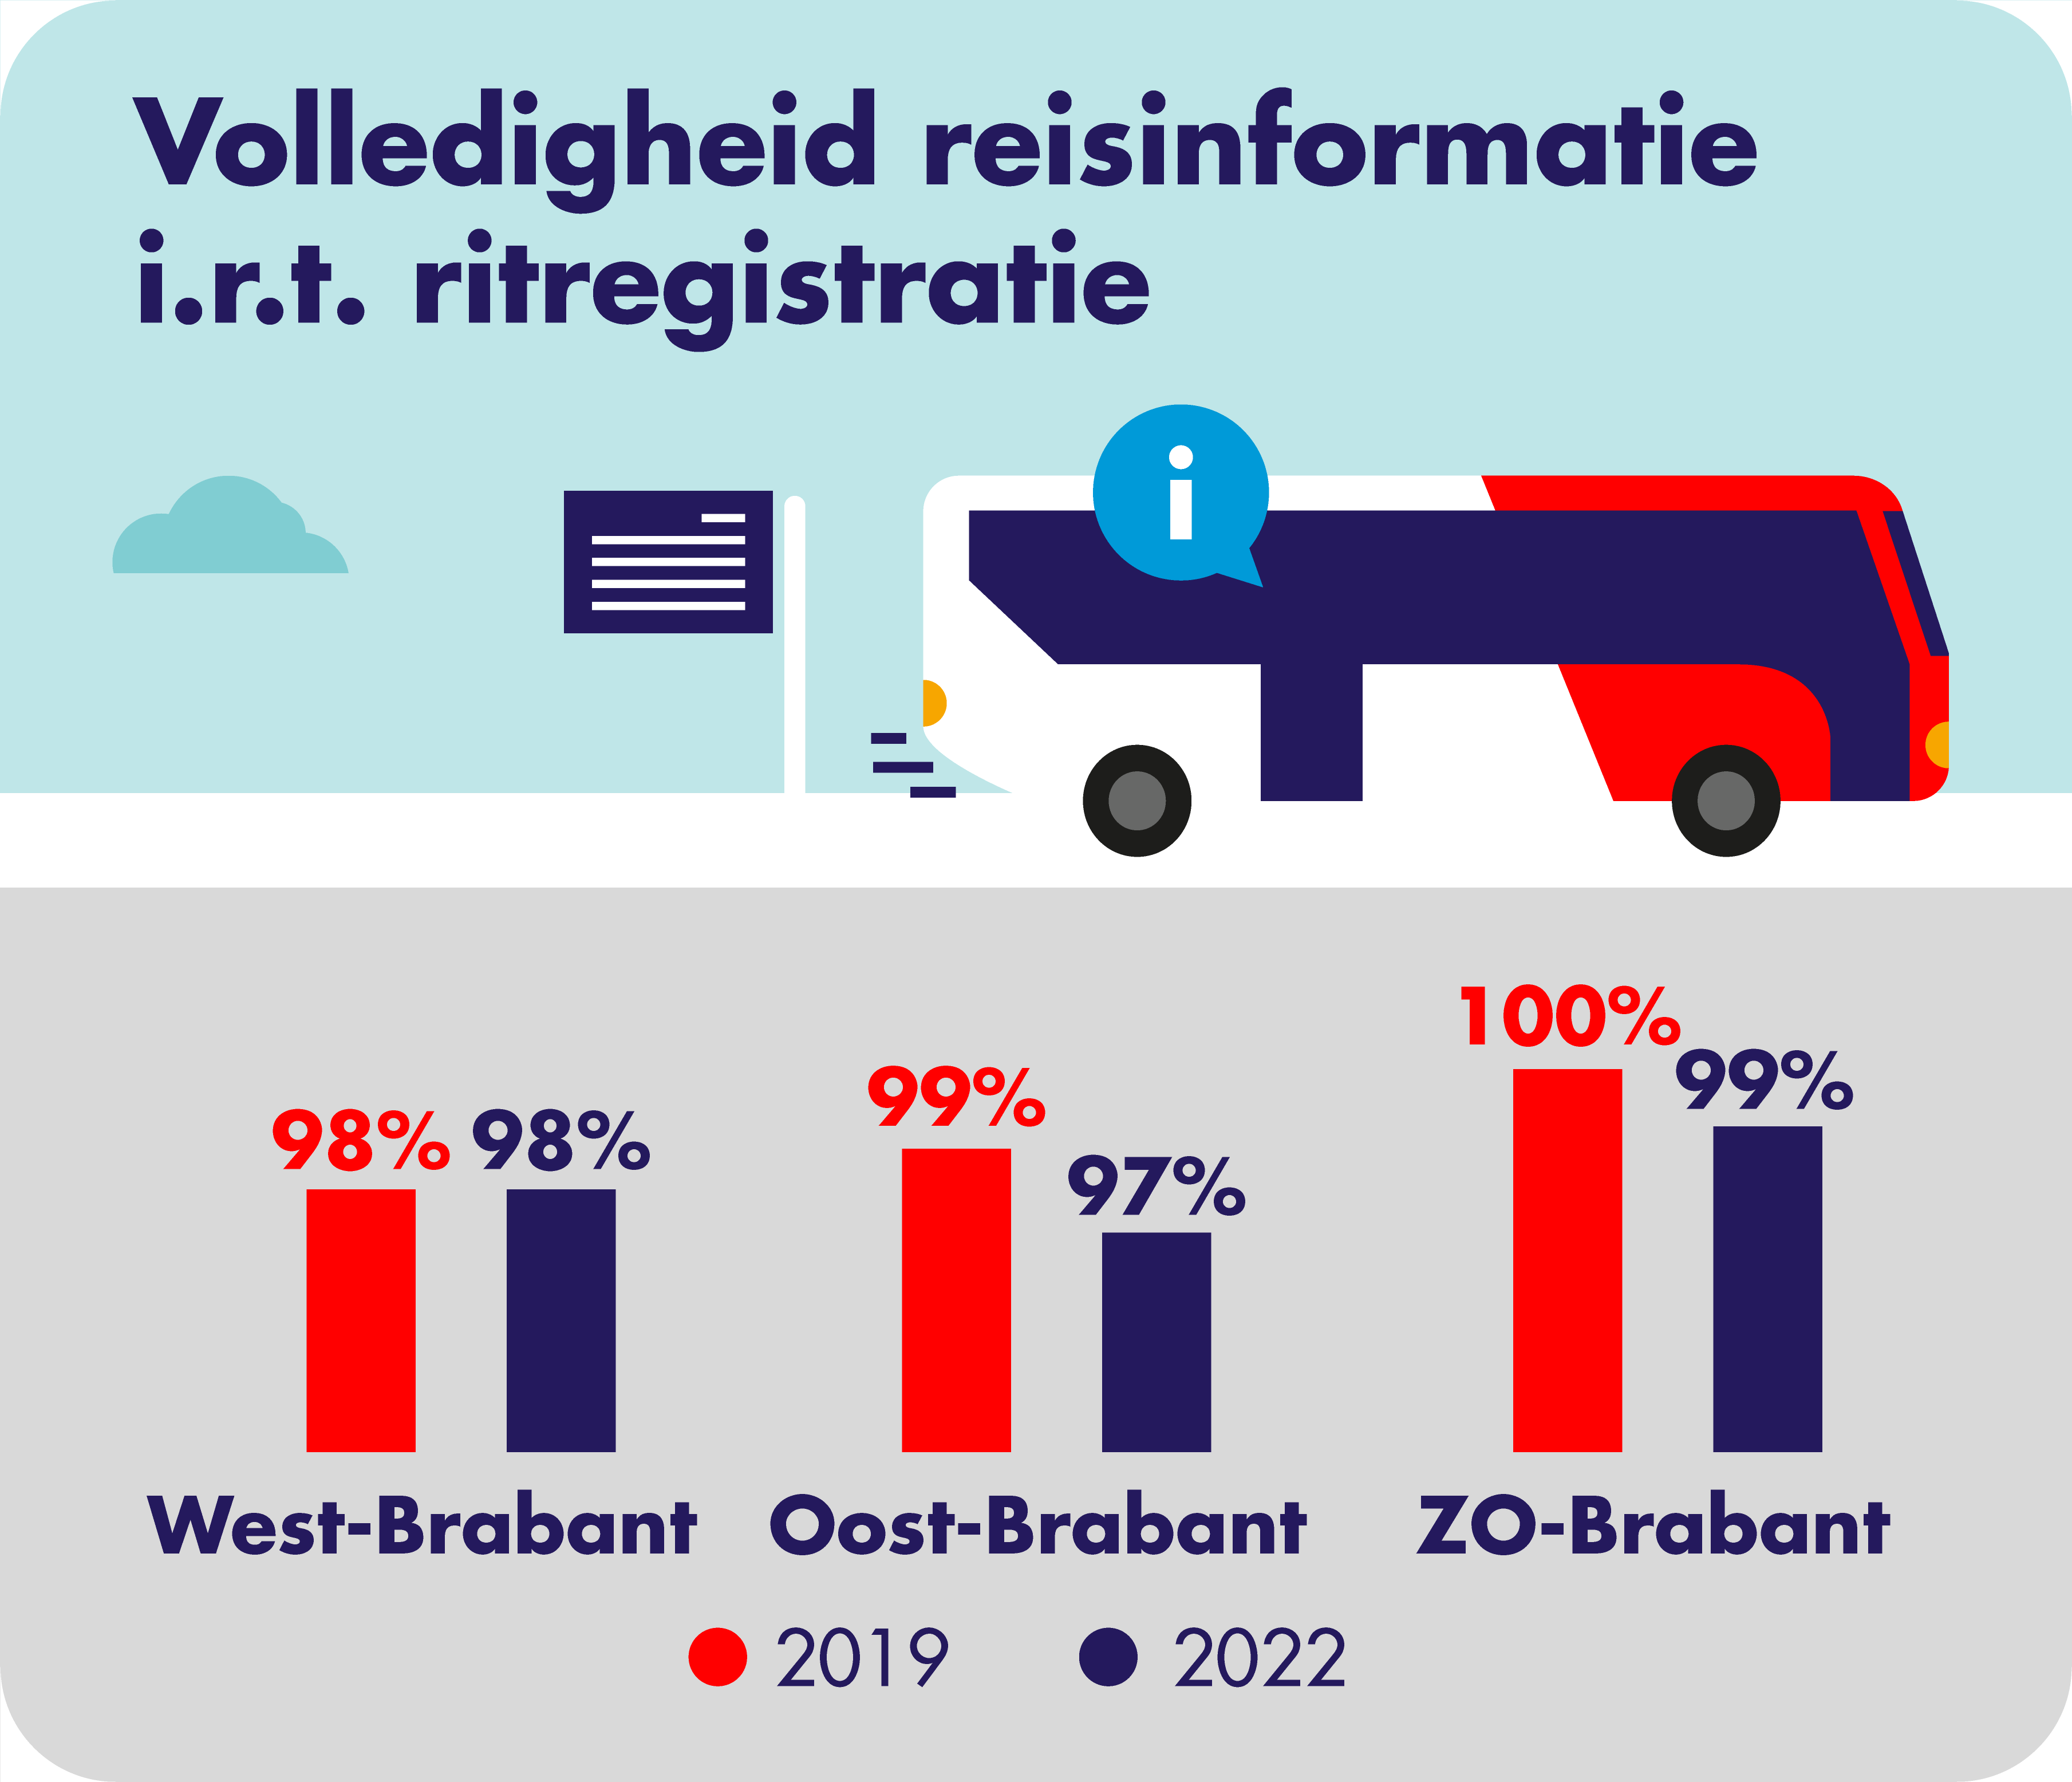 Op deze afbeelding is de volledigheid van de reisinformatie in relatie tot de ritregistratie per concessiegebied weergegeven. In West-Brabant was dit in zowel 2019 als 2022 voor 98% volledig. In Oost-Brabant was dit in 2019 voor 99% en in 2022 voor 97% volledig. In Zuidoost-Brabant was dit in 2019 voor 100% en in 2022 voor 99% volledig.